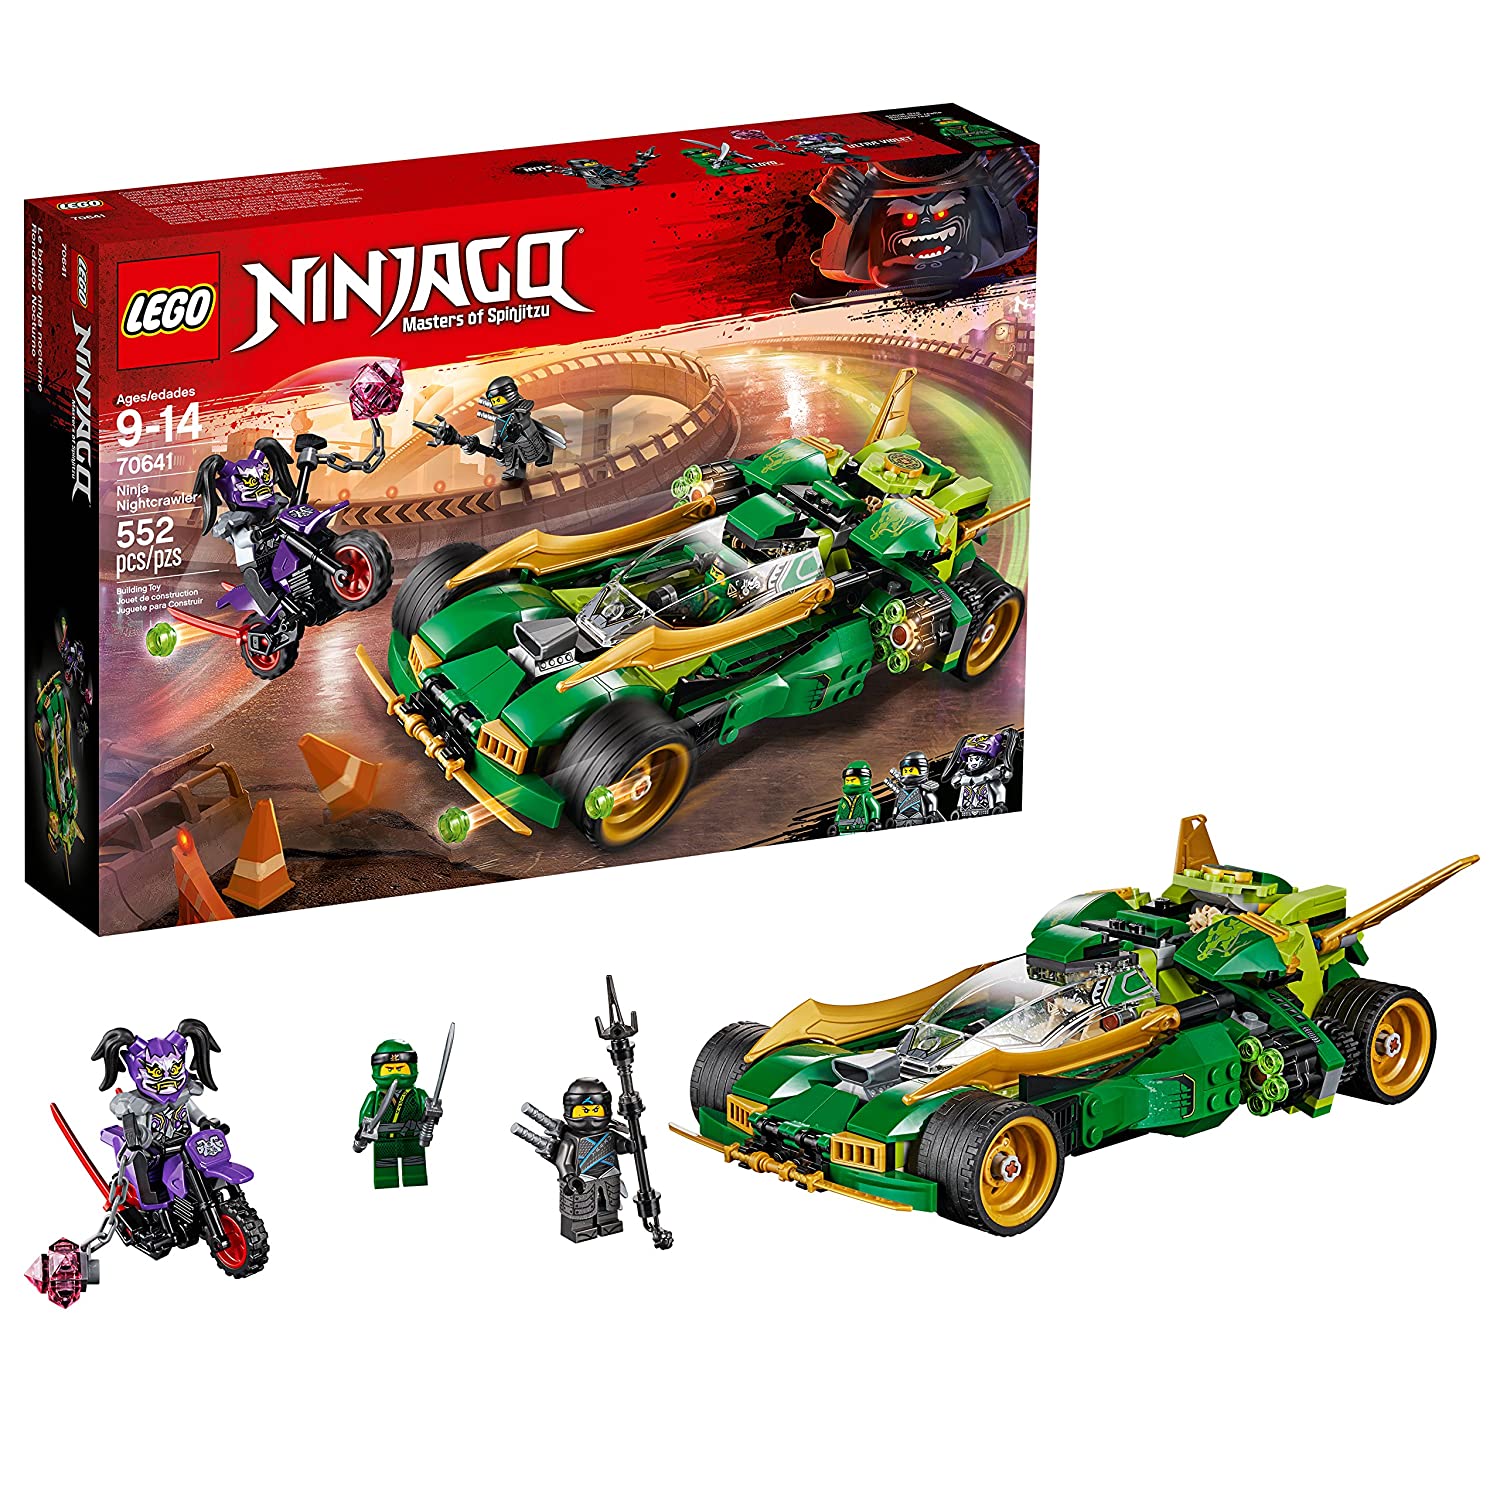 LEGO NINJAGO Ninja Nightcrawler 70641 Building Kit (552 Piece)